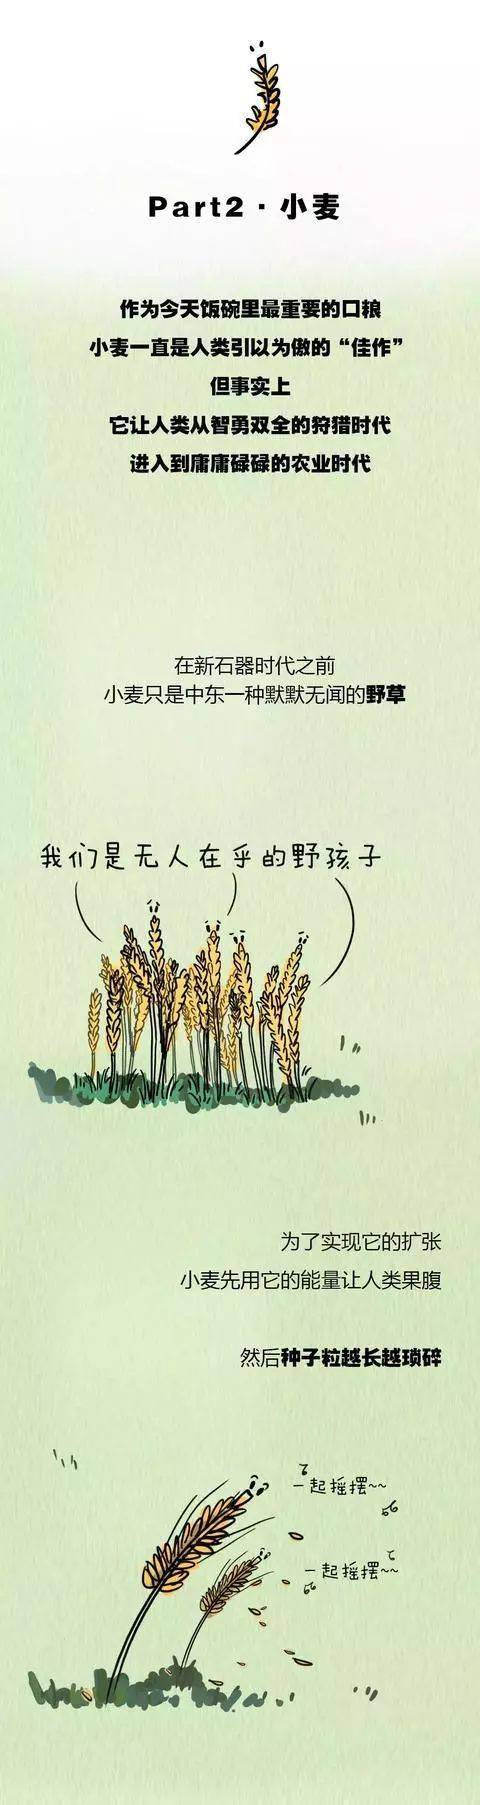 植物描写小麦